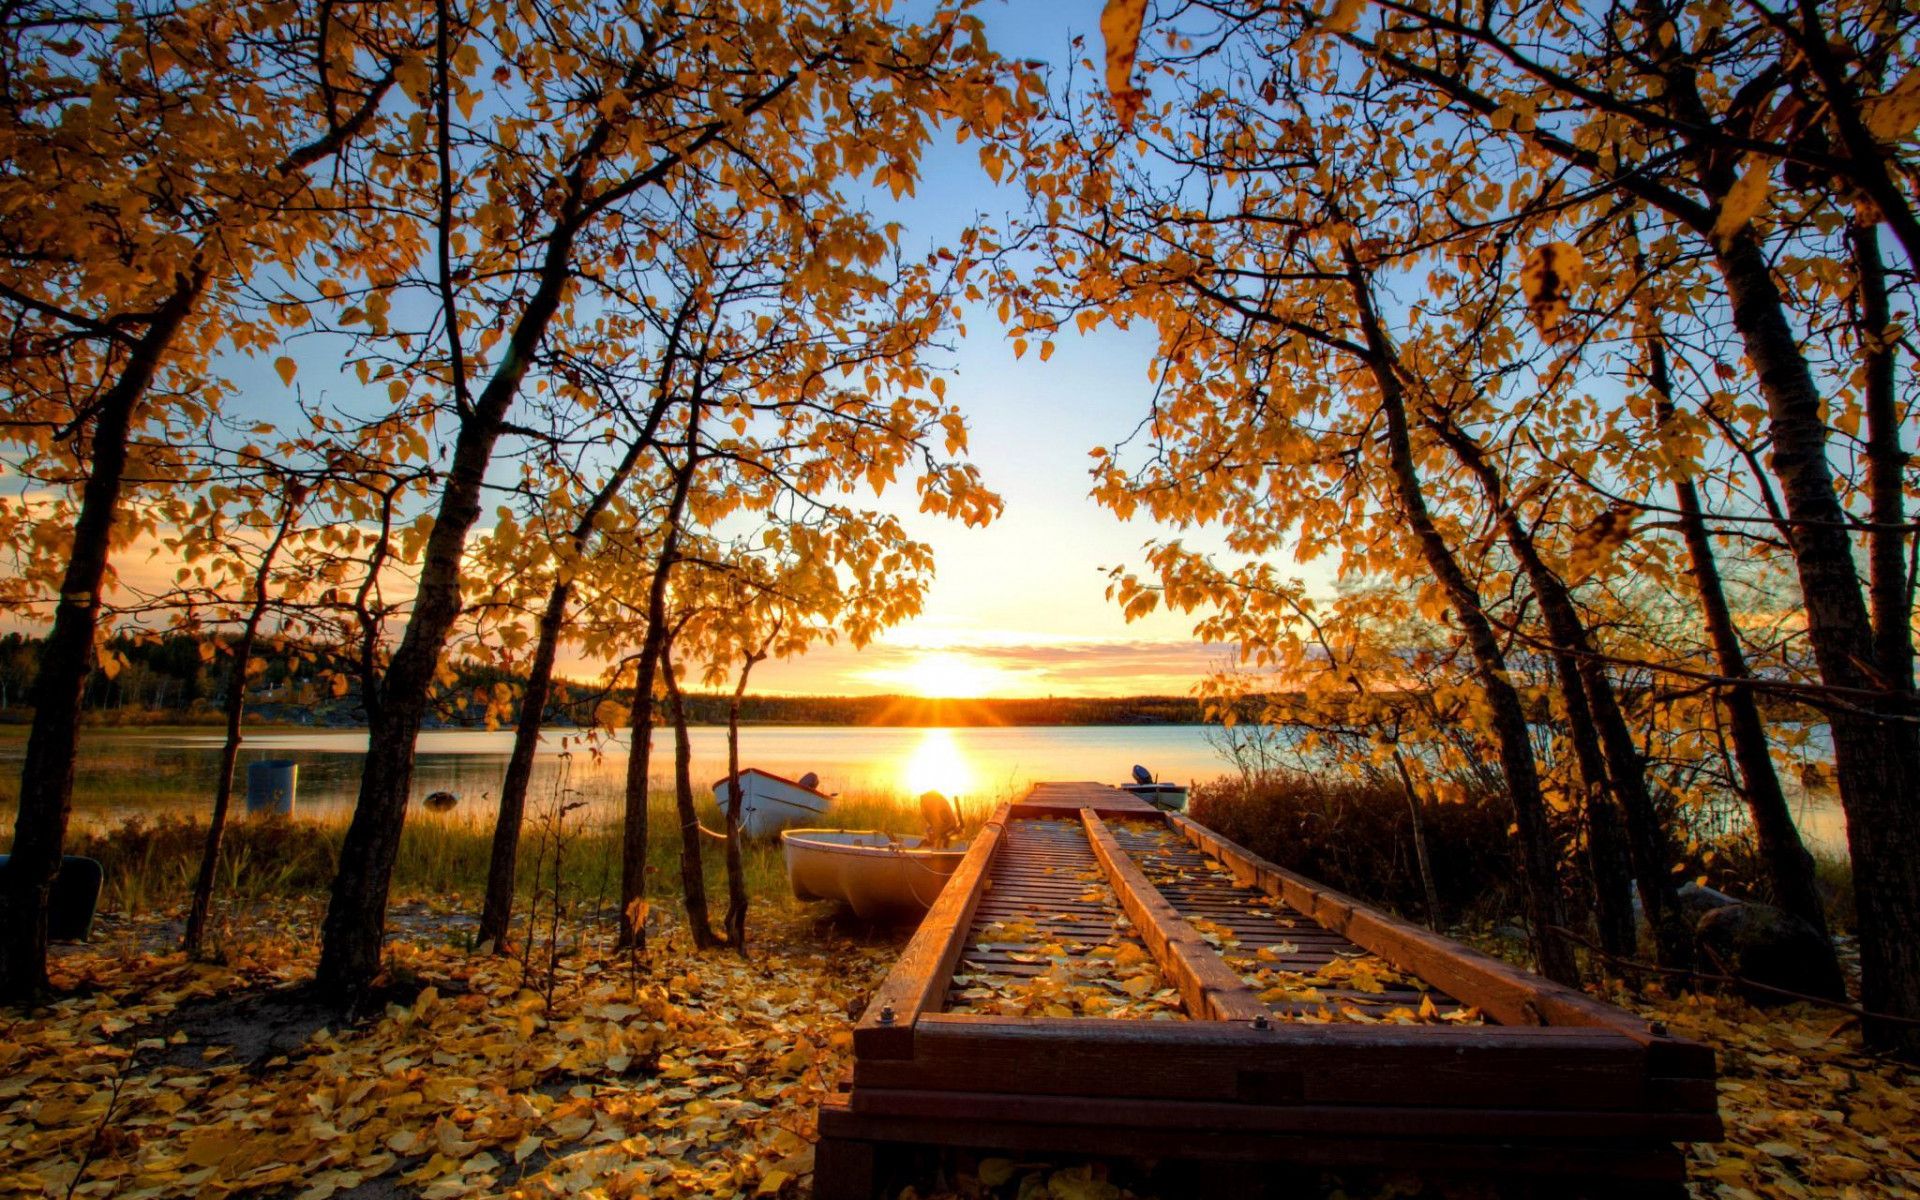 Autumn Sun Over The Riverbank HD desktop wallpaper, Widescreen, High Definition